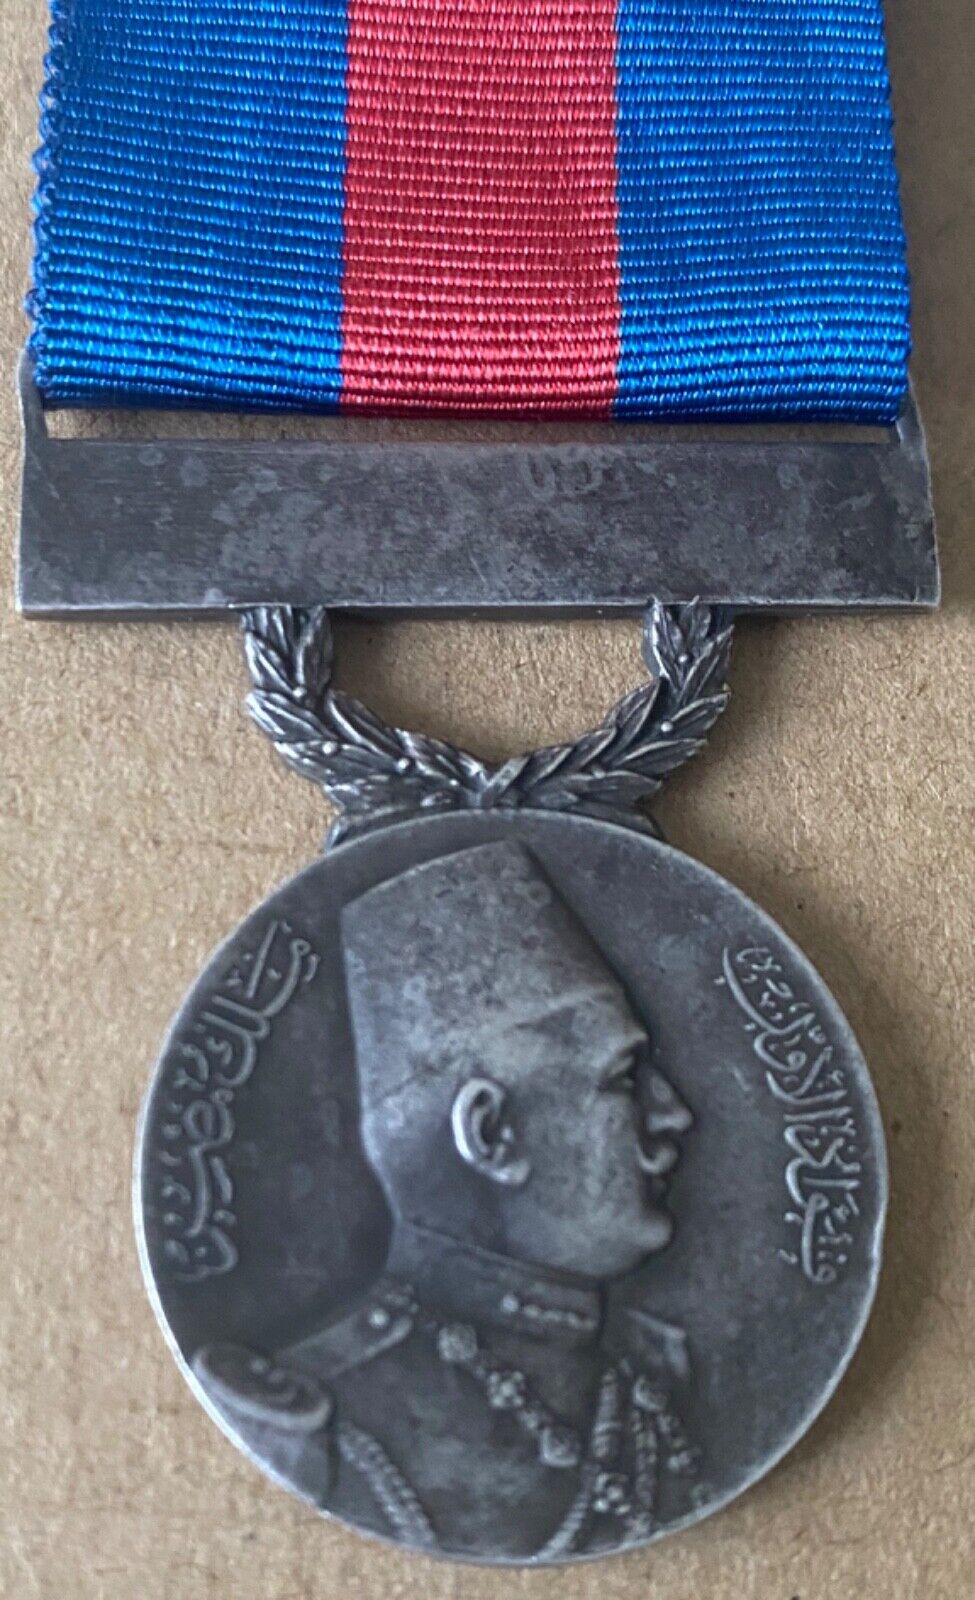 1927 Kingdom of Egypt Medal Al- Ridah (Satisfaction) King Fuad I Badge Order